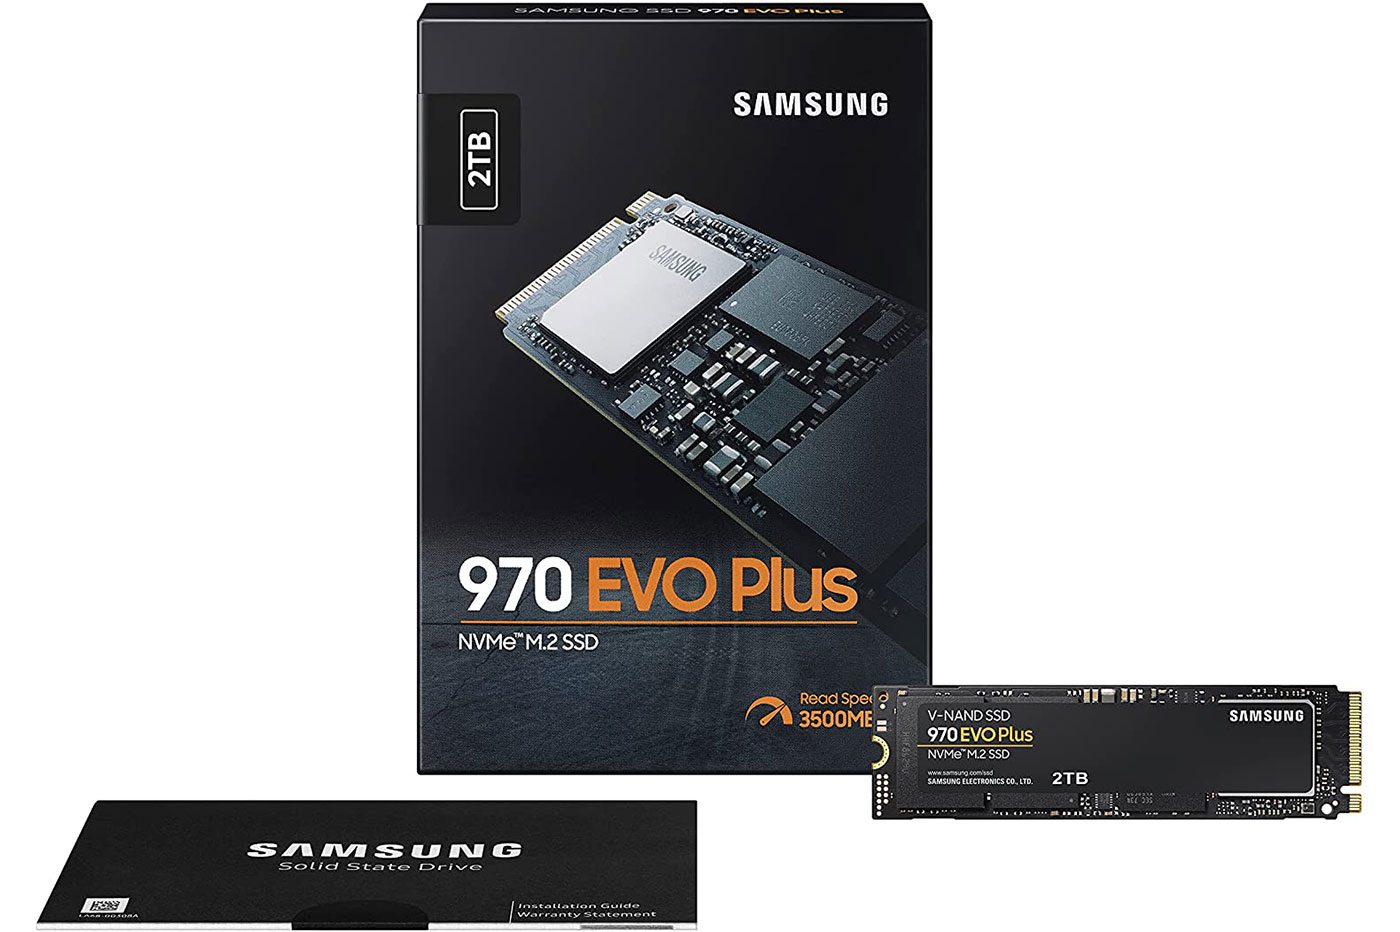 Amazon explose le prix du SSD Samsung 970 EVO Plus 2 To, du jamais vu ⚡